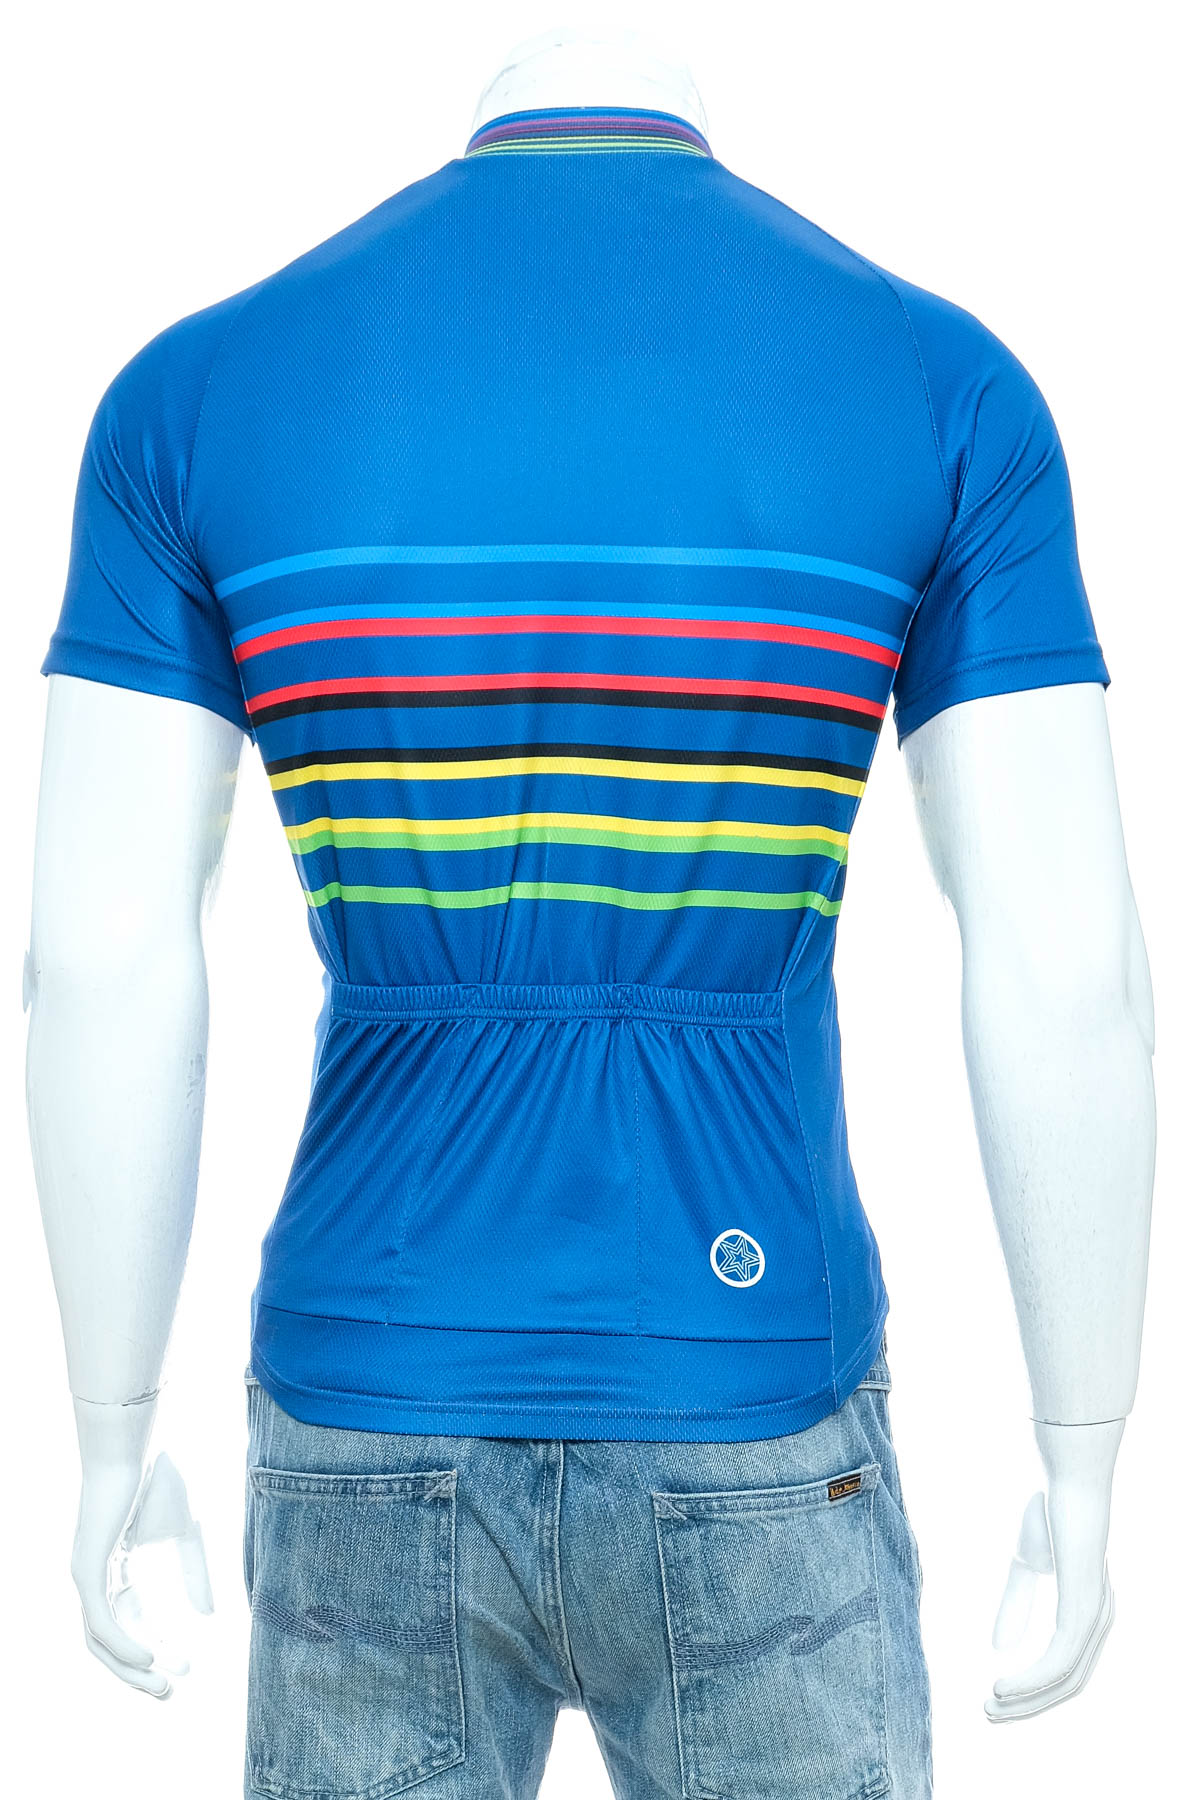 Αντρική μπλούζα Για ποδηλασία - STARLIGHT - 1